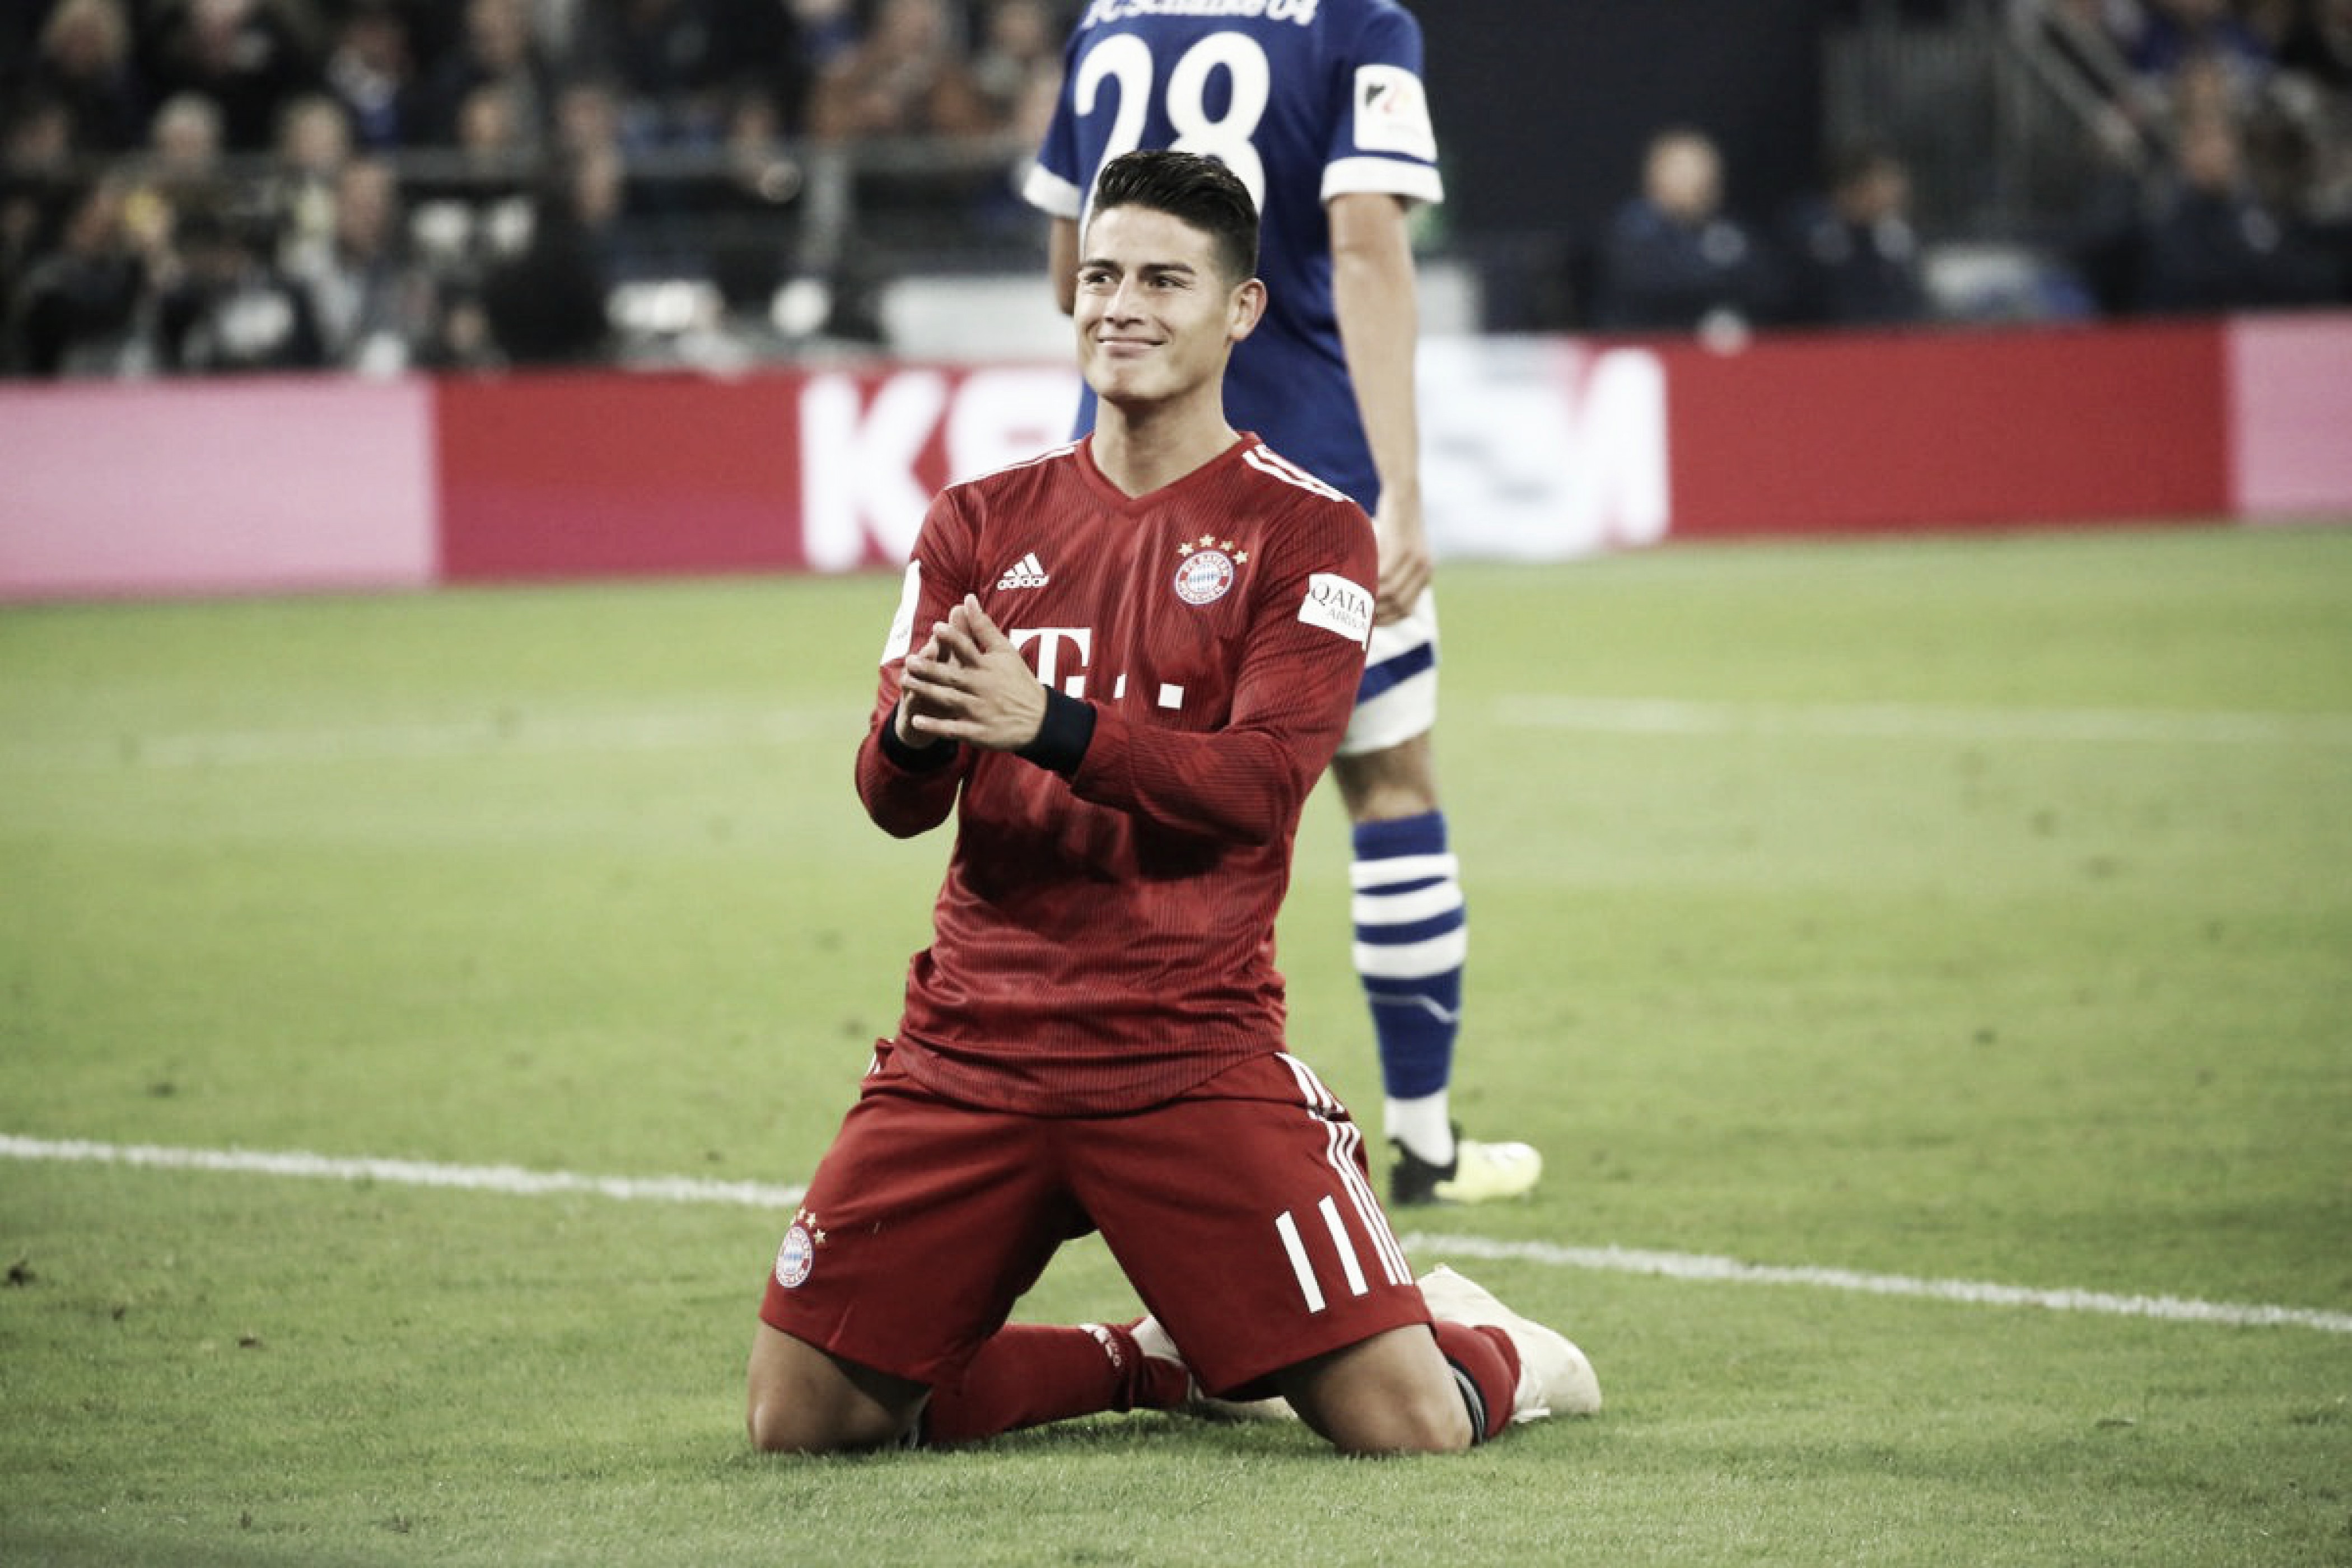 Com show de James, Bayern de Munique vence Schalke 04 e se mantém na ponta da Bundesliga